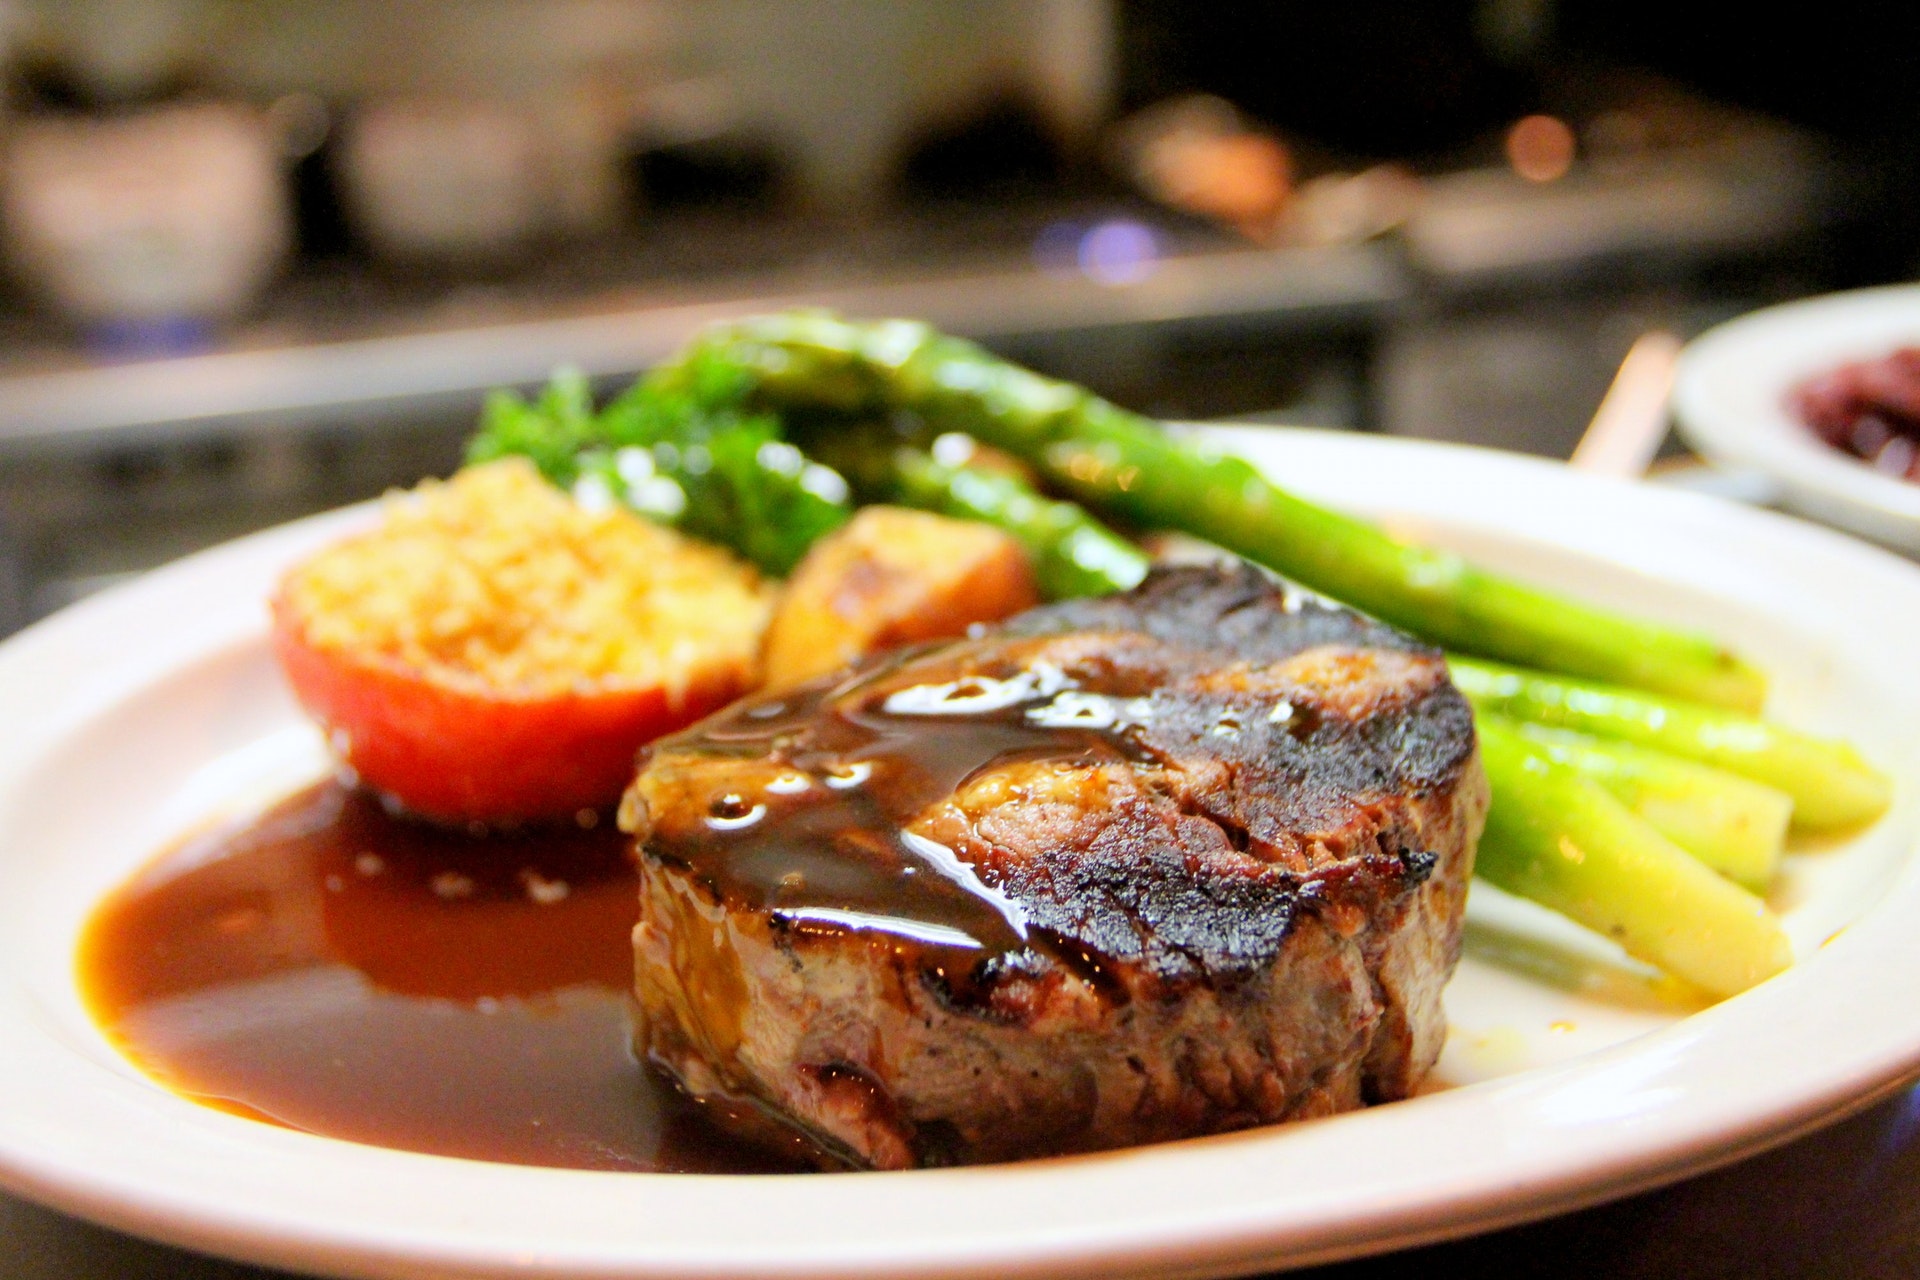 steak dinner at houston restaurant